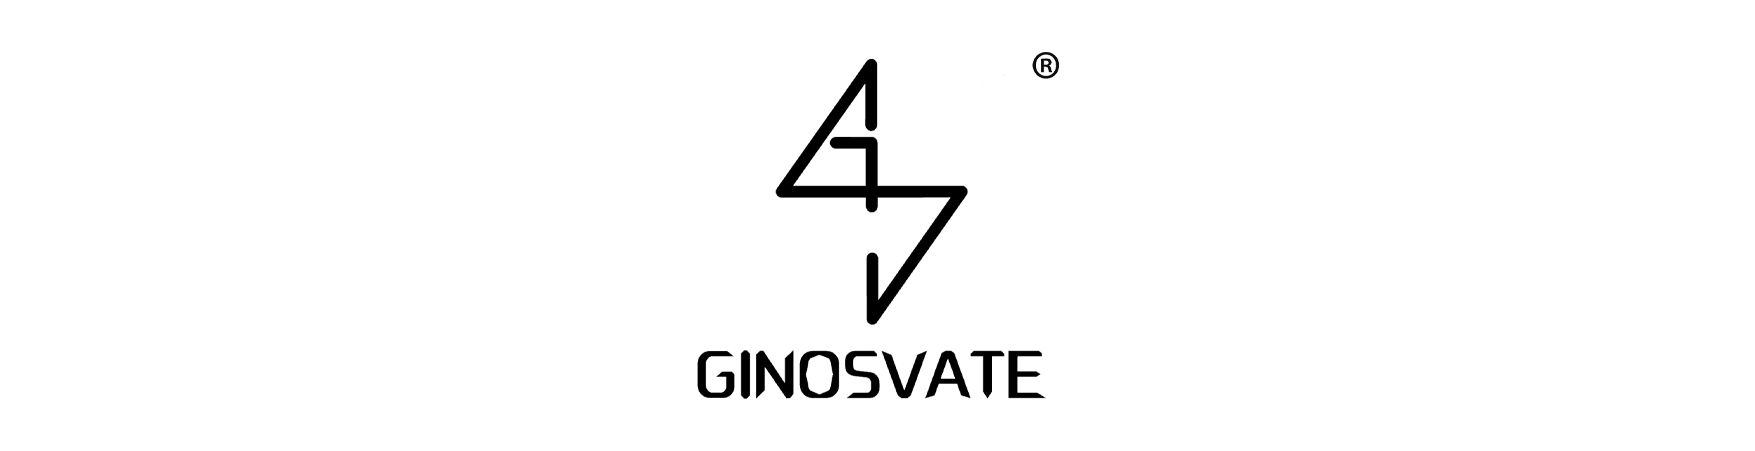 Ginosvate